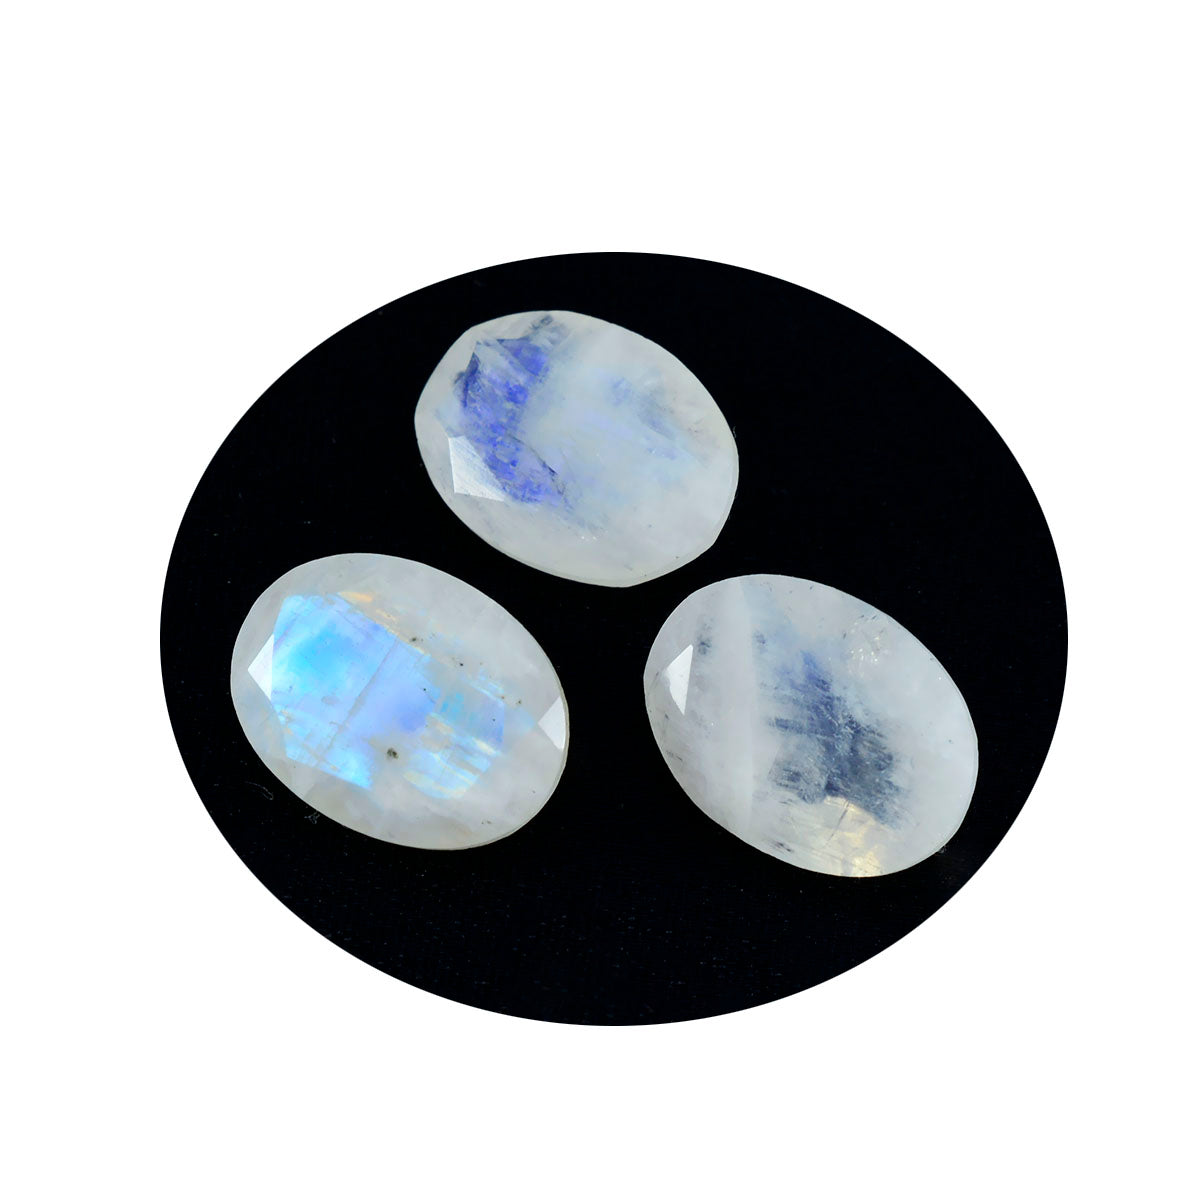 Riyogems 1 Stück weißer Regenbogen-Mondstein, facettiert, 9 x 11 mm, ovale Form, Edelstein von guter Qualität